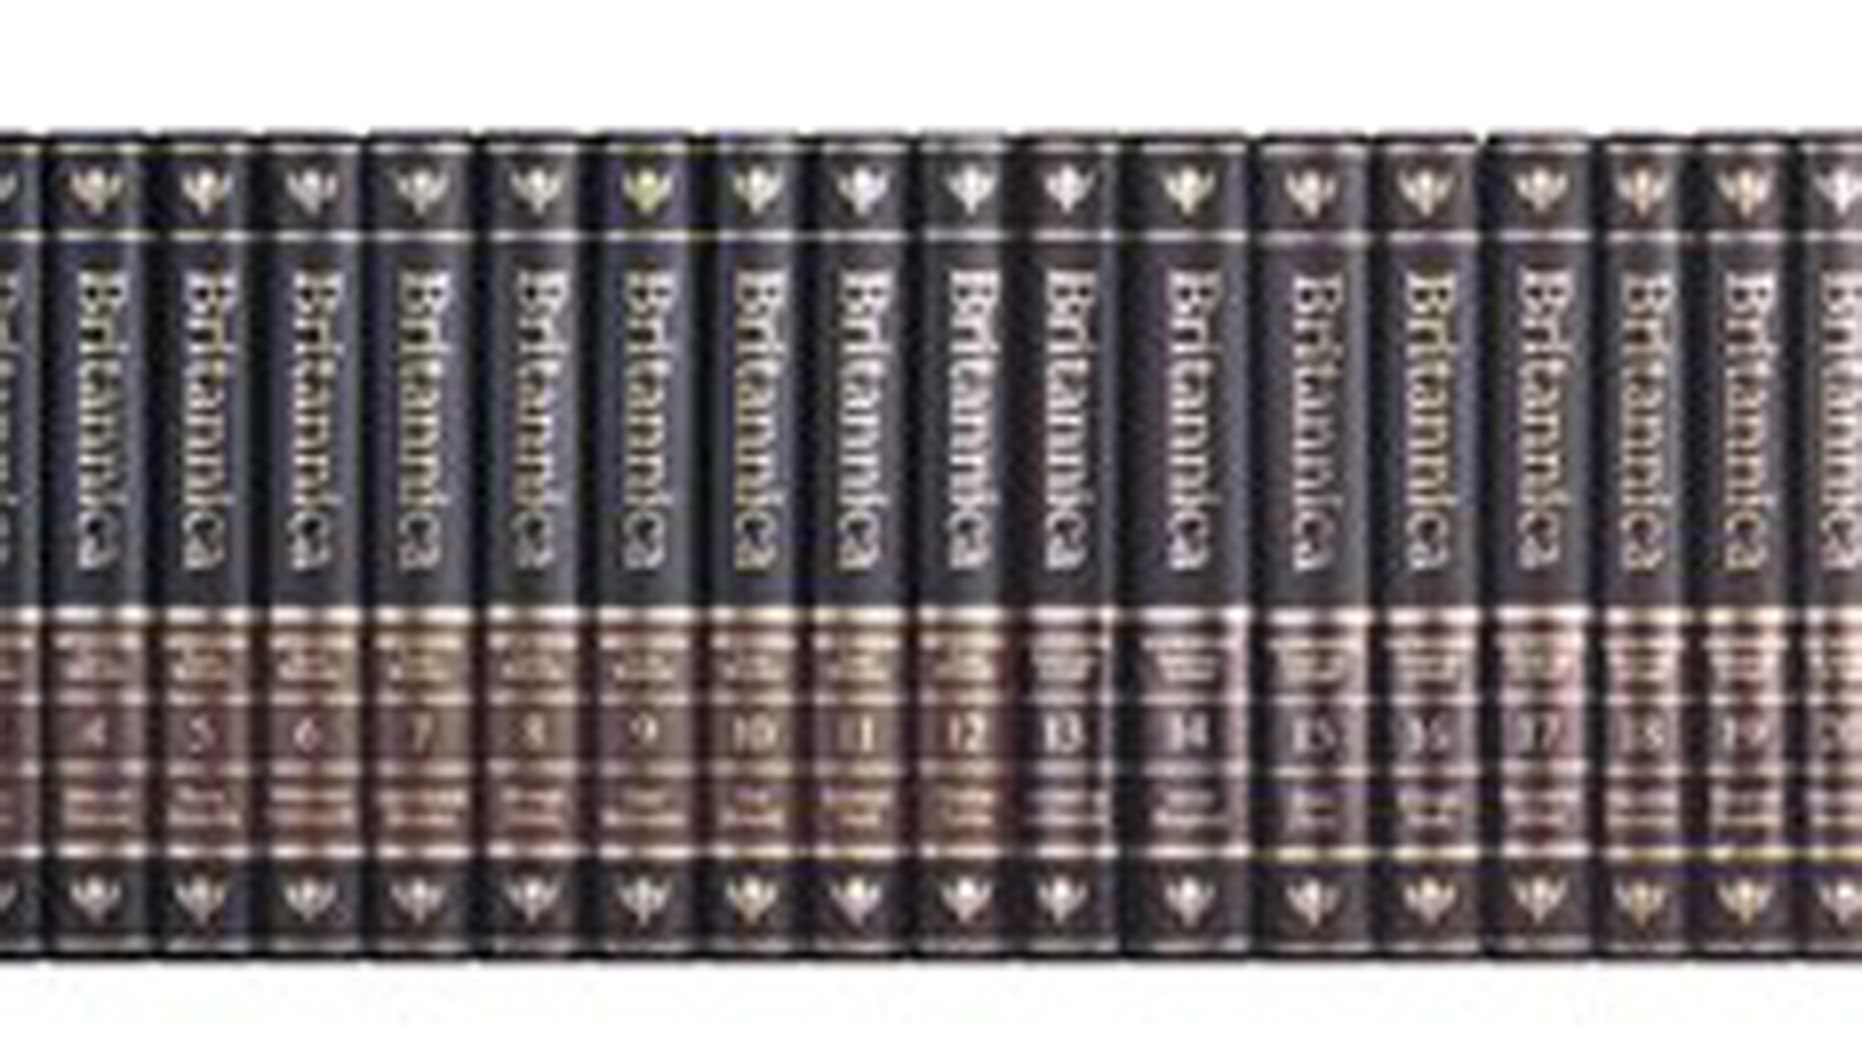 encyclopaedia britannica book